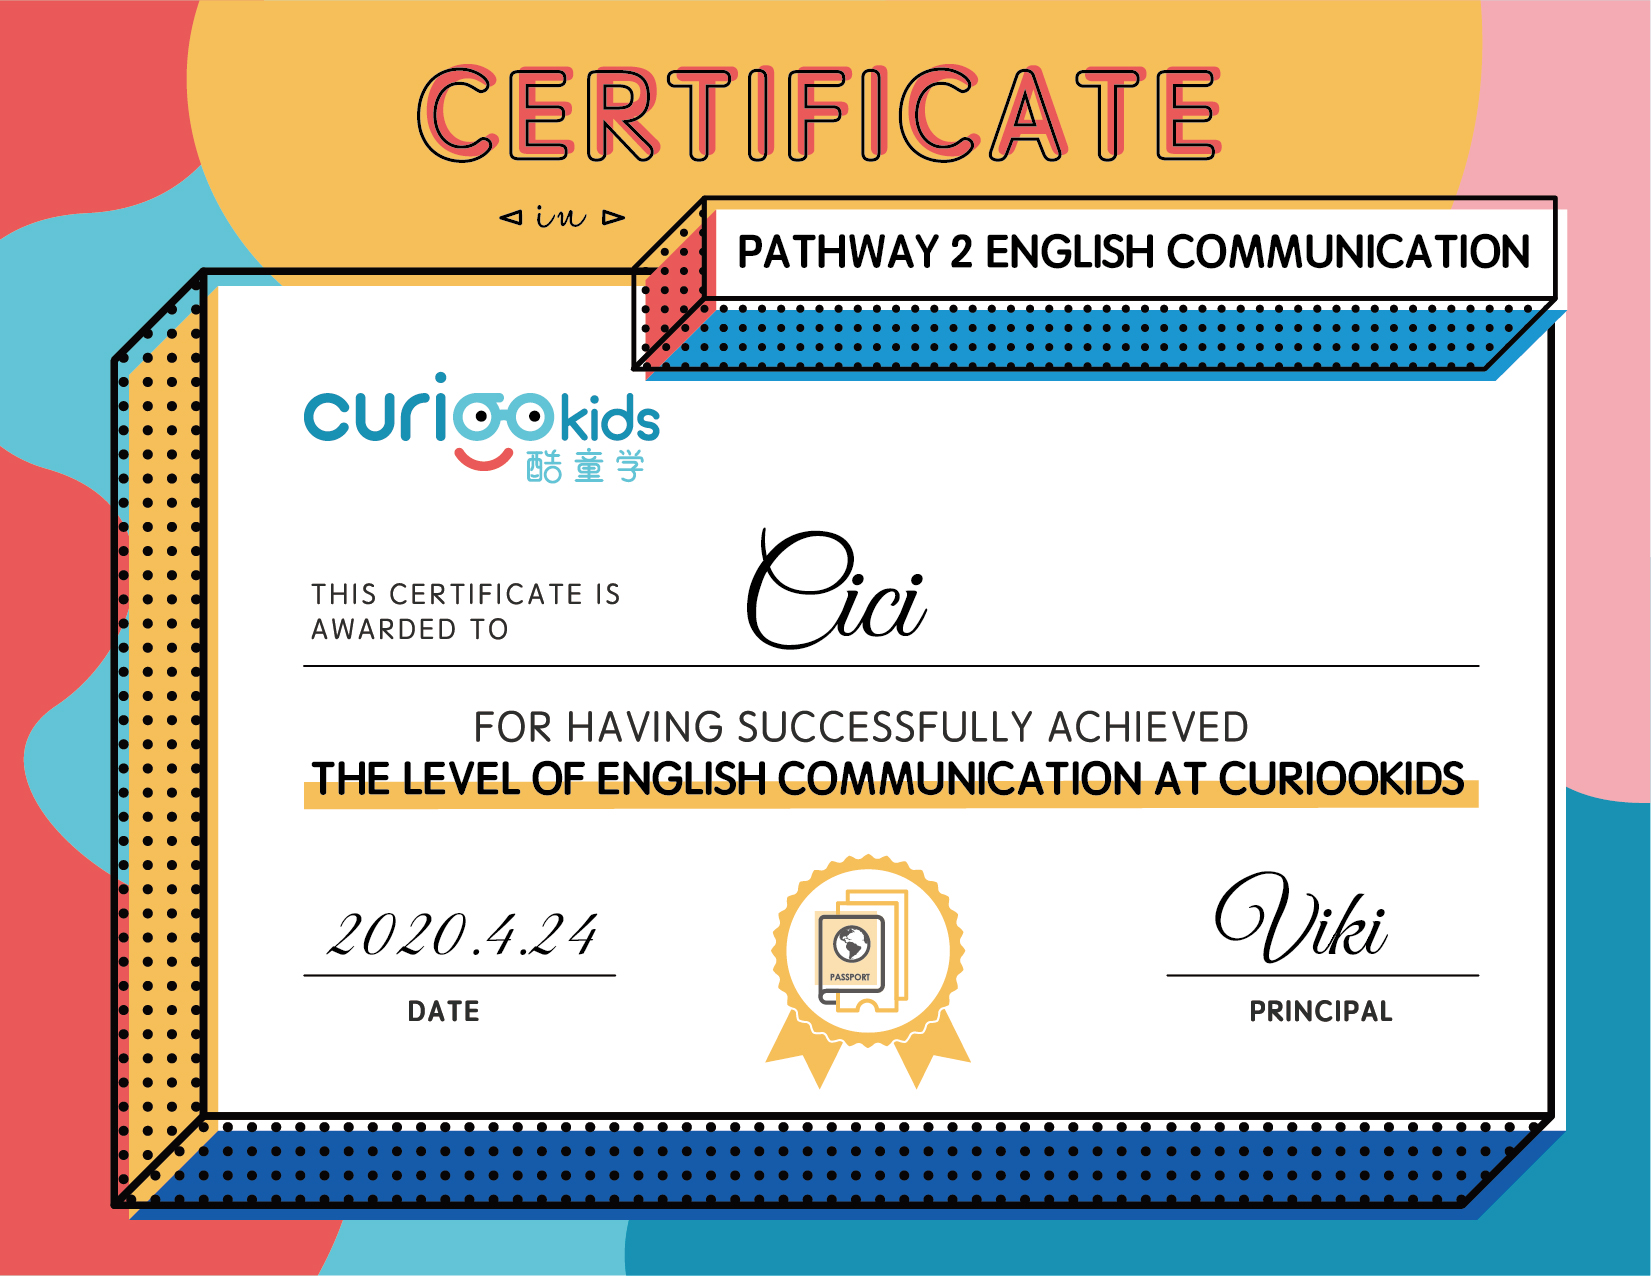 Pathway 2-ENGLISH-COMMUNICATION